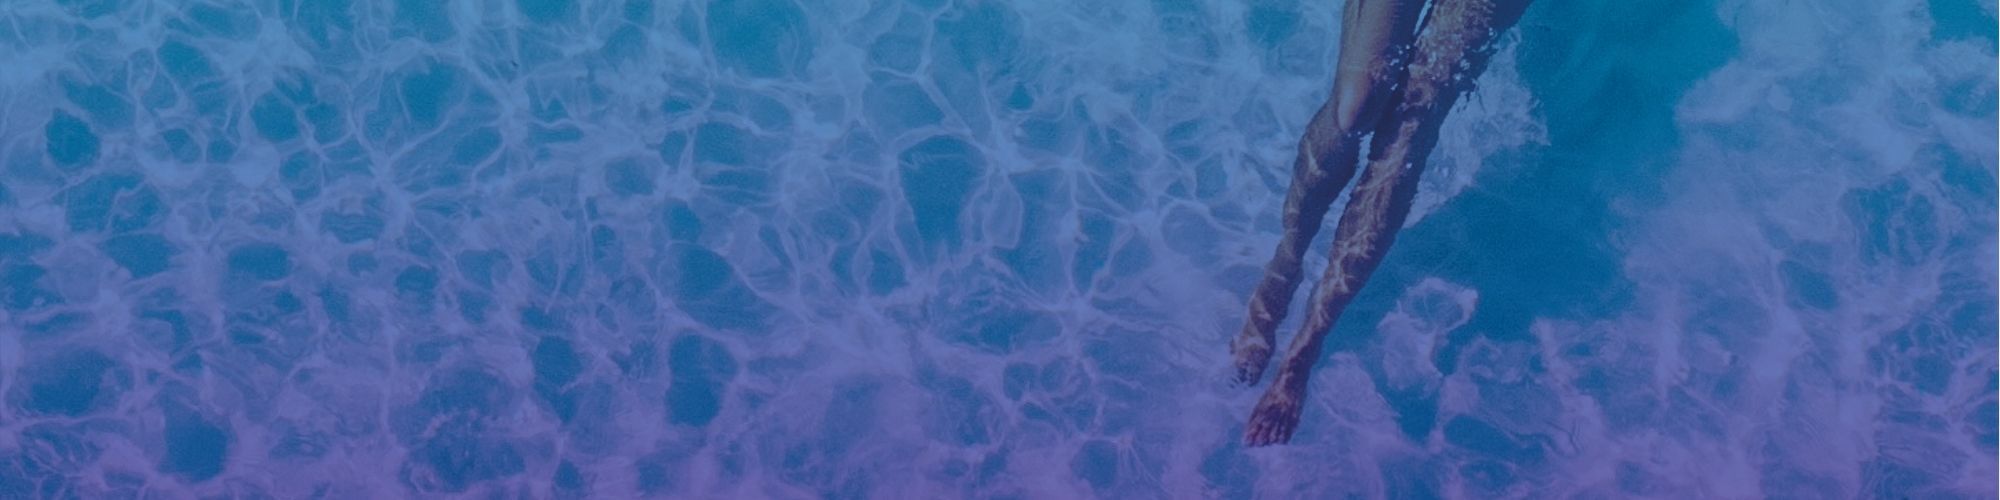  Meer Unterwasserwelt Hintergrundbild 2000x500. Rückfragen zu Ihrem ClubBonus